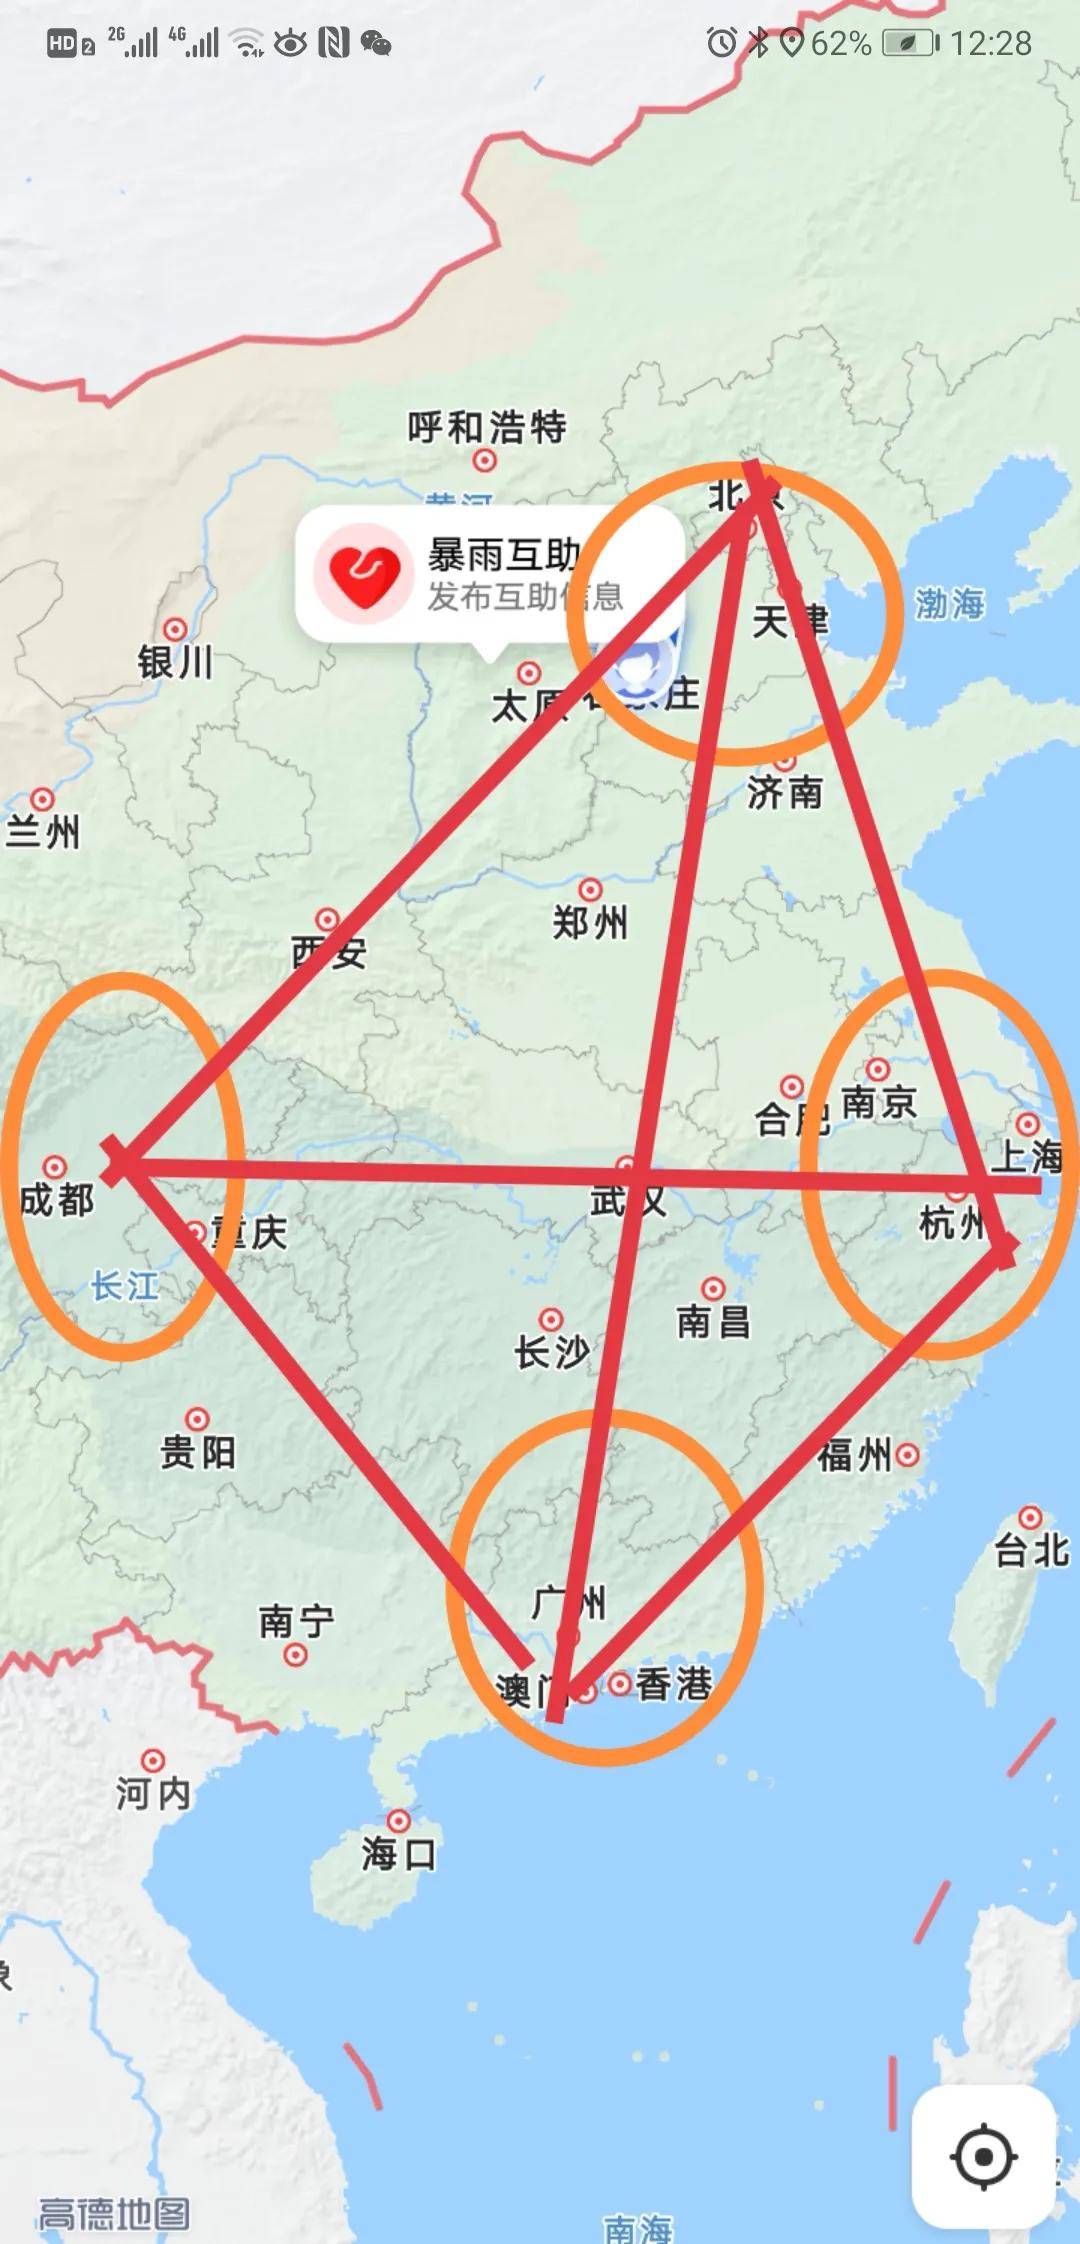 中国的战略中心城市